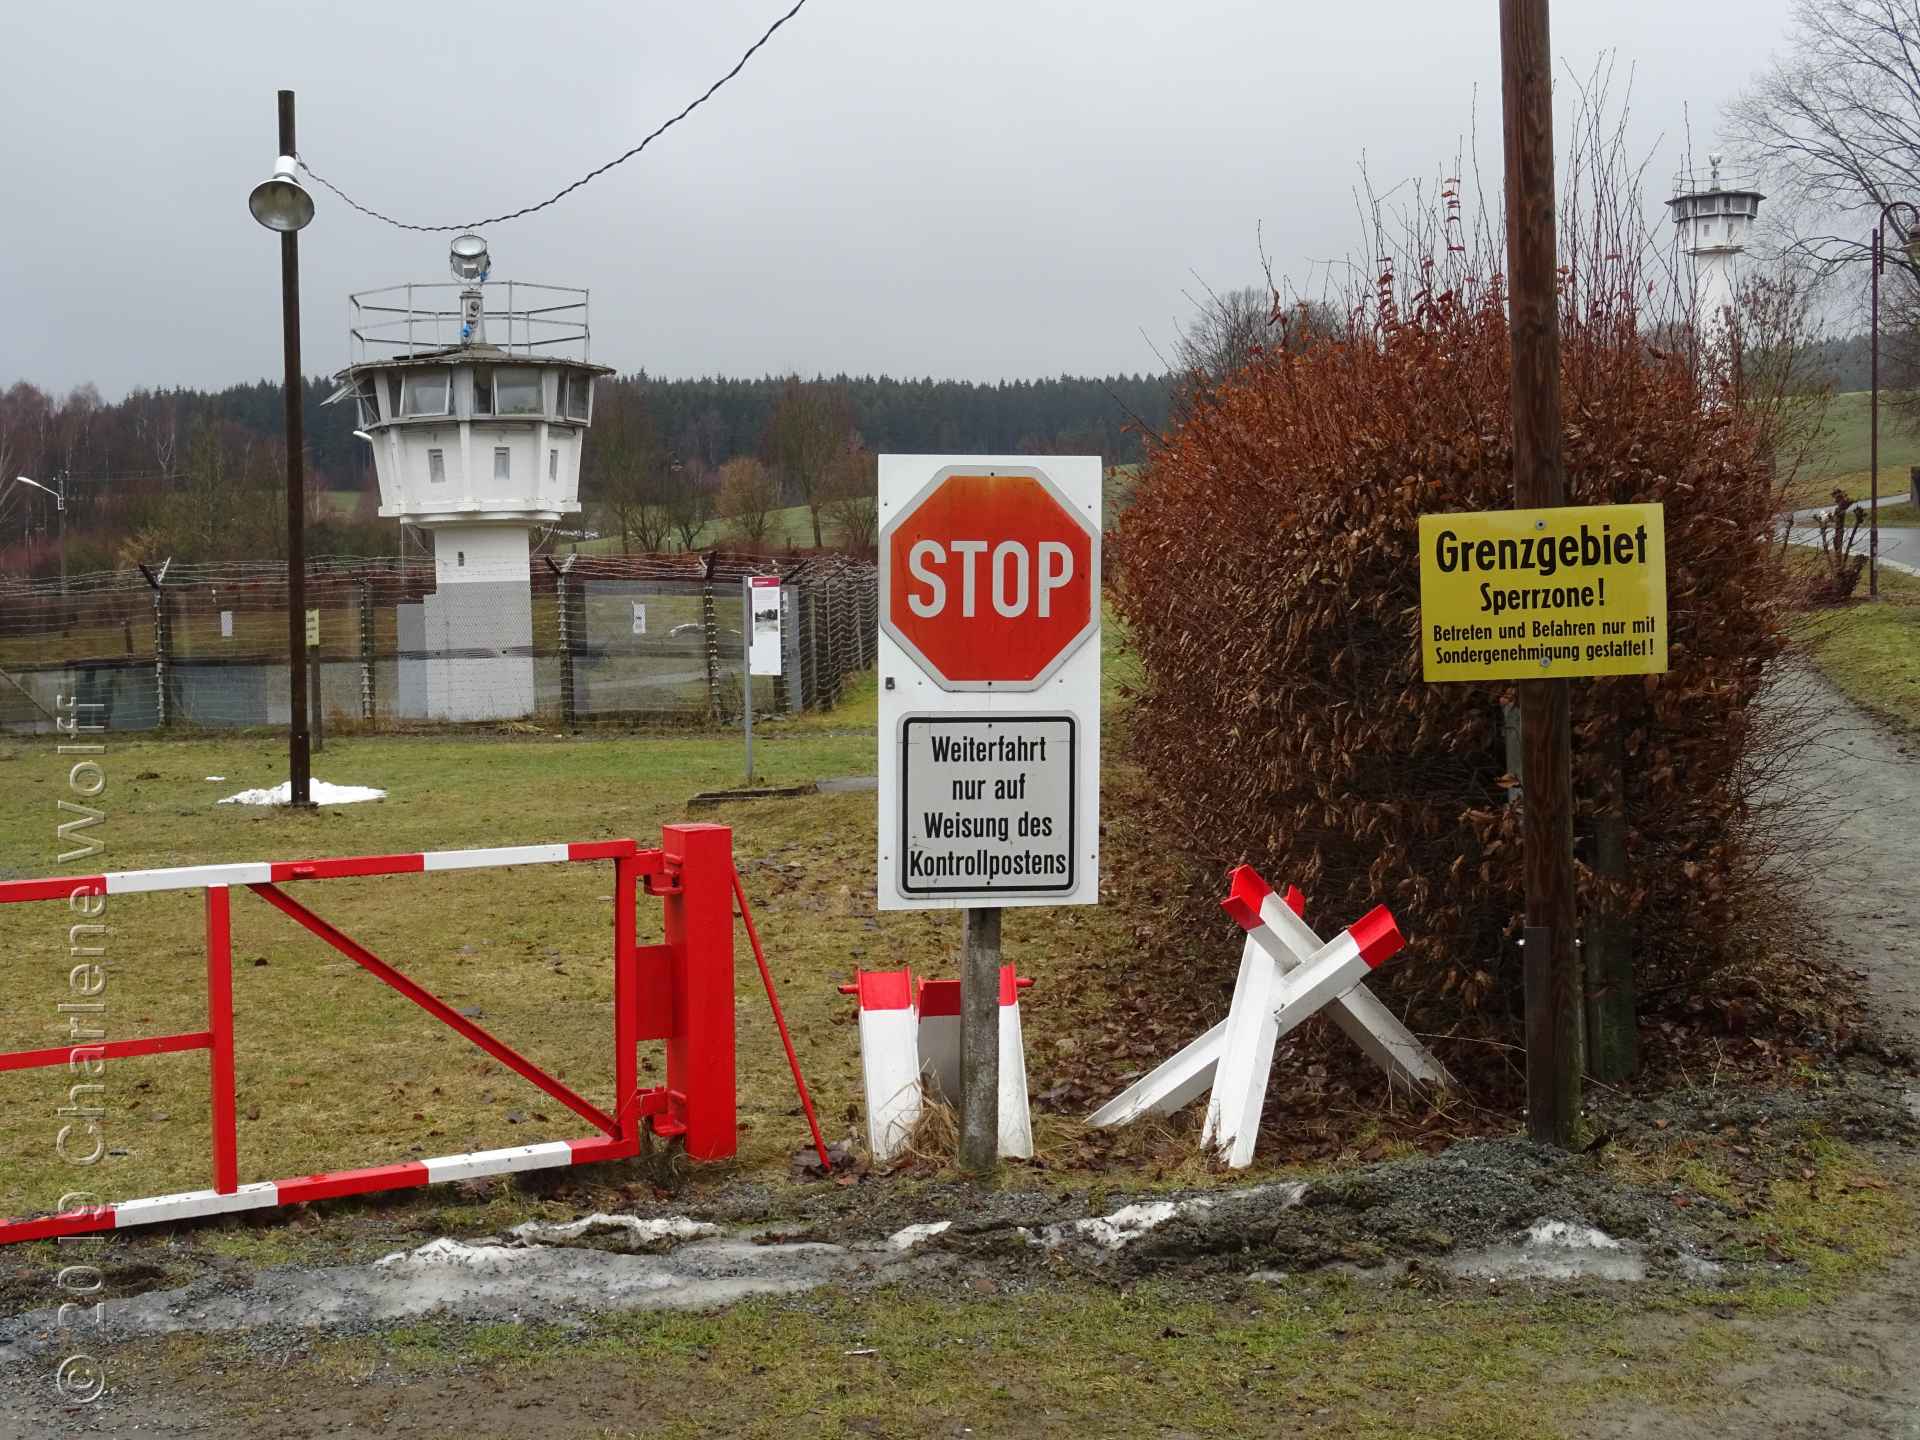 Grenzbefestigungen in Mödlareuth